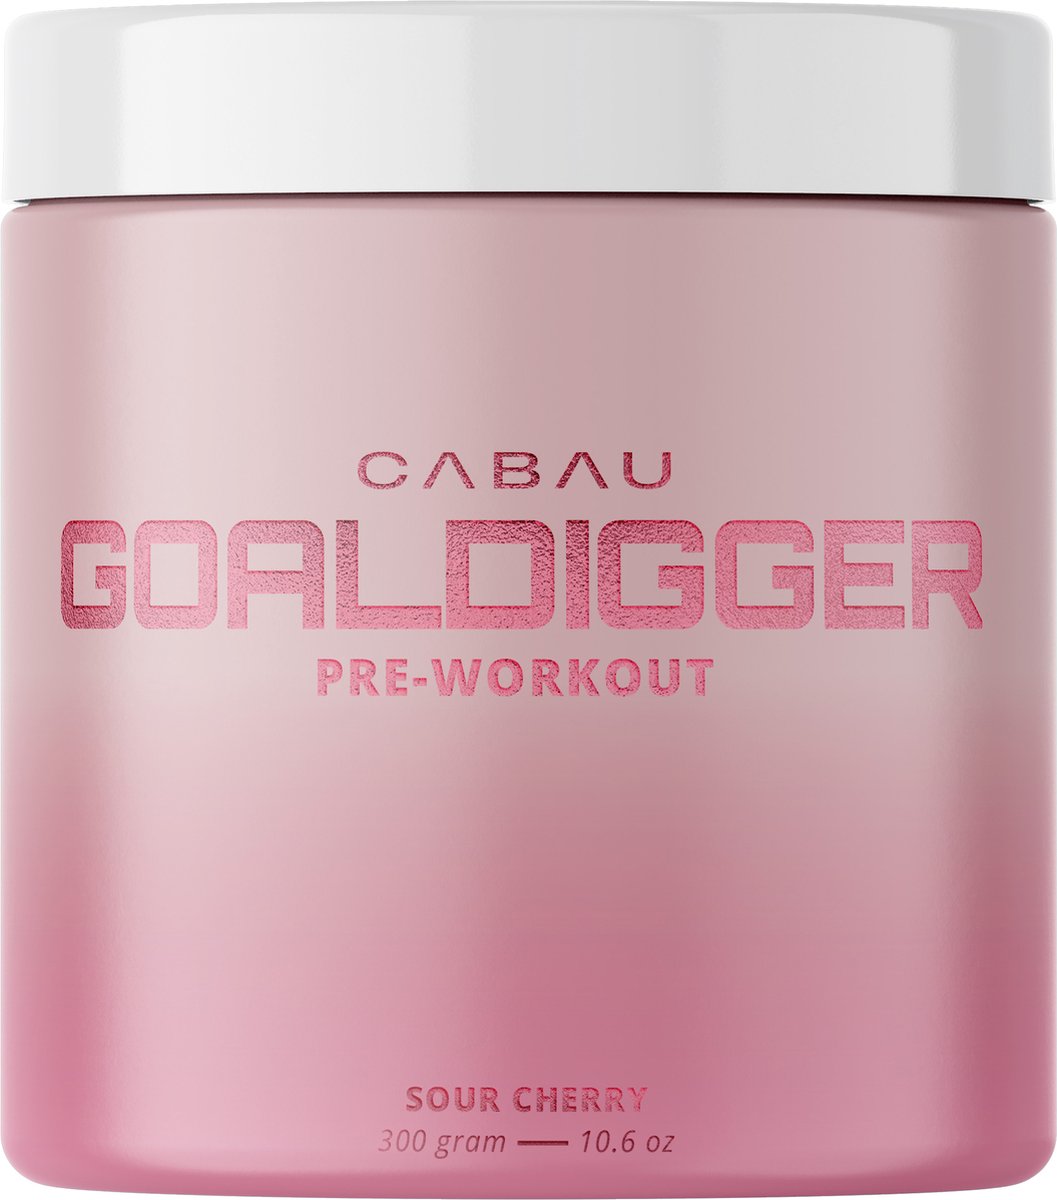 Cabau Lifestyle - Pre-workout - Kersen - 300 gram - 30 boosts - Voor meer uithoudingsvermogen en energie - Pre workout voor vrouwen